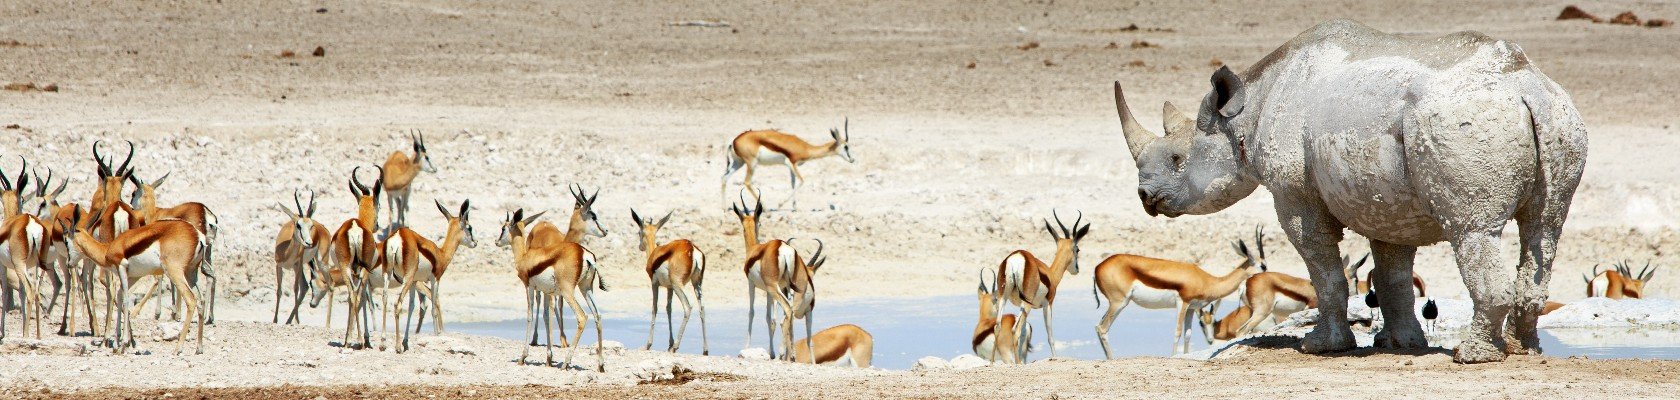 Etosha nationaal park